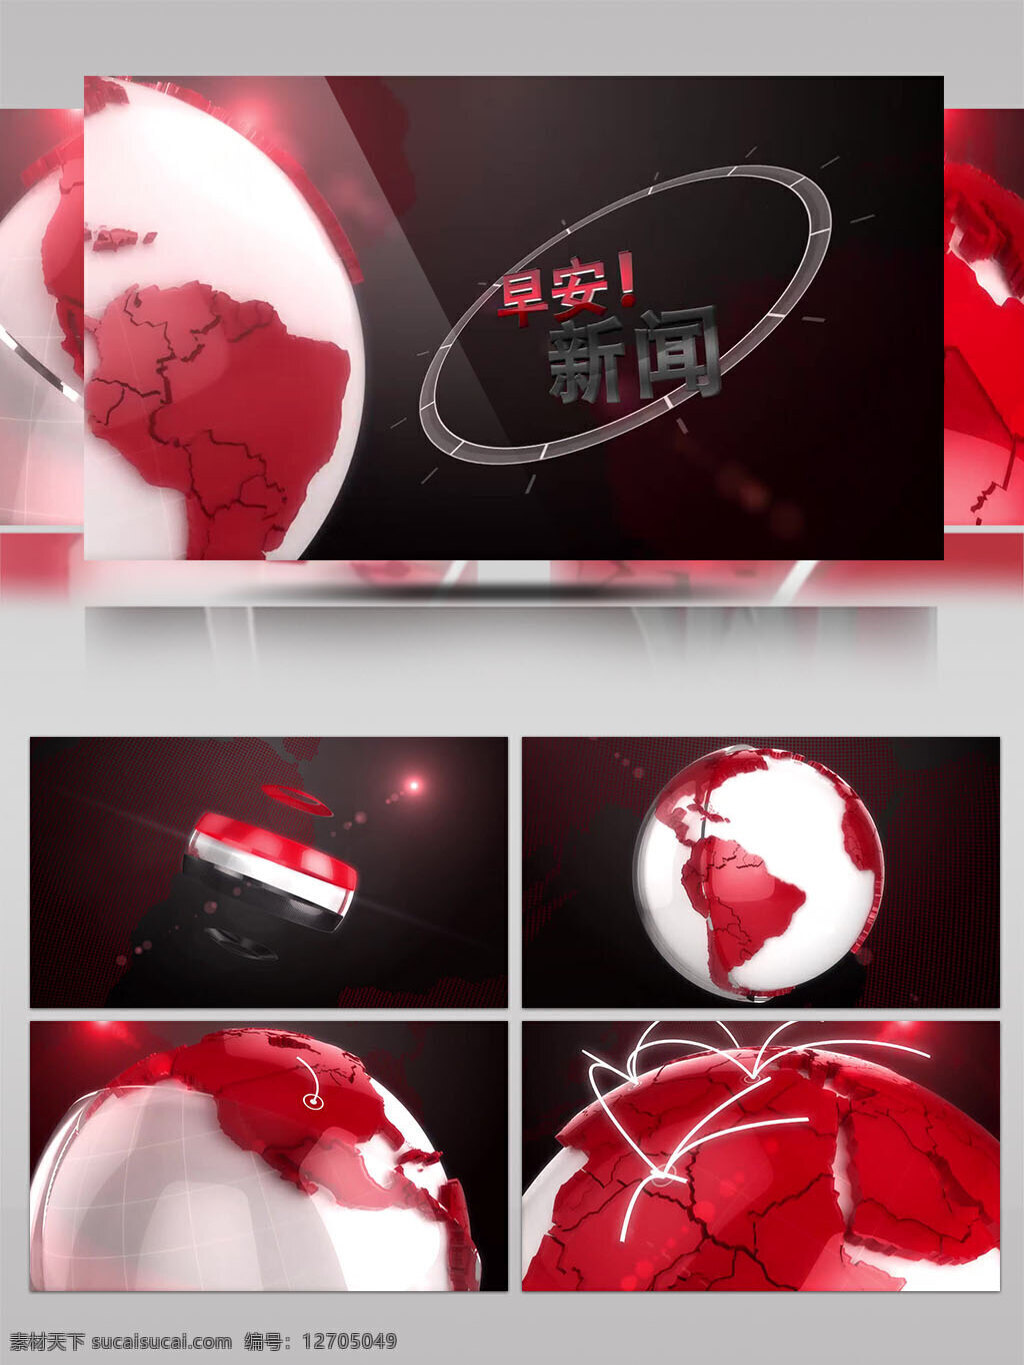 红色 地球 转动 联线 新闻 片头 logo 演绎 ae 模板 红色地球 地球转动 地球联线 新闻片头 logo演绎 ae模板